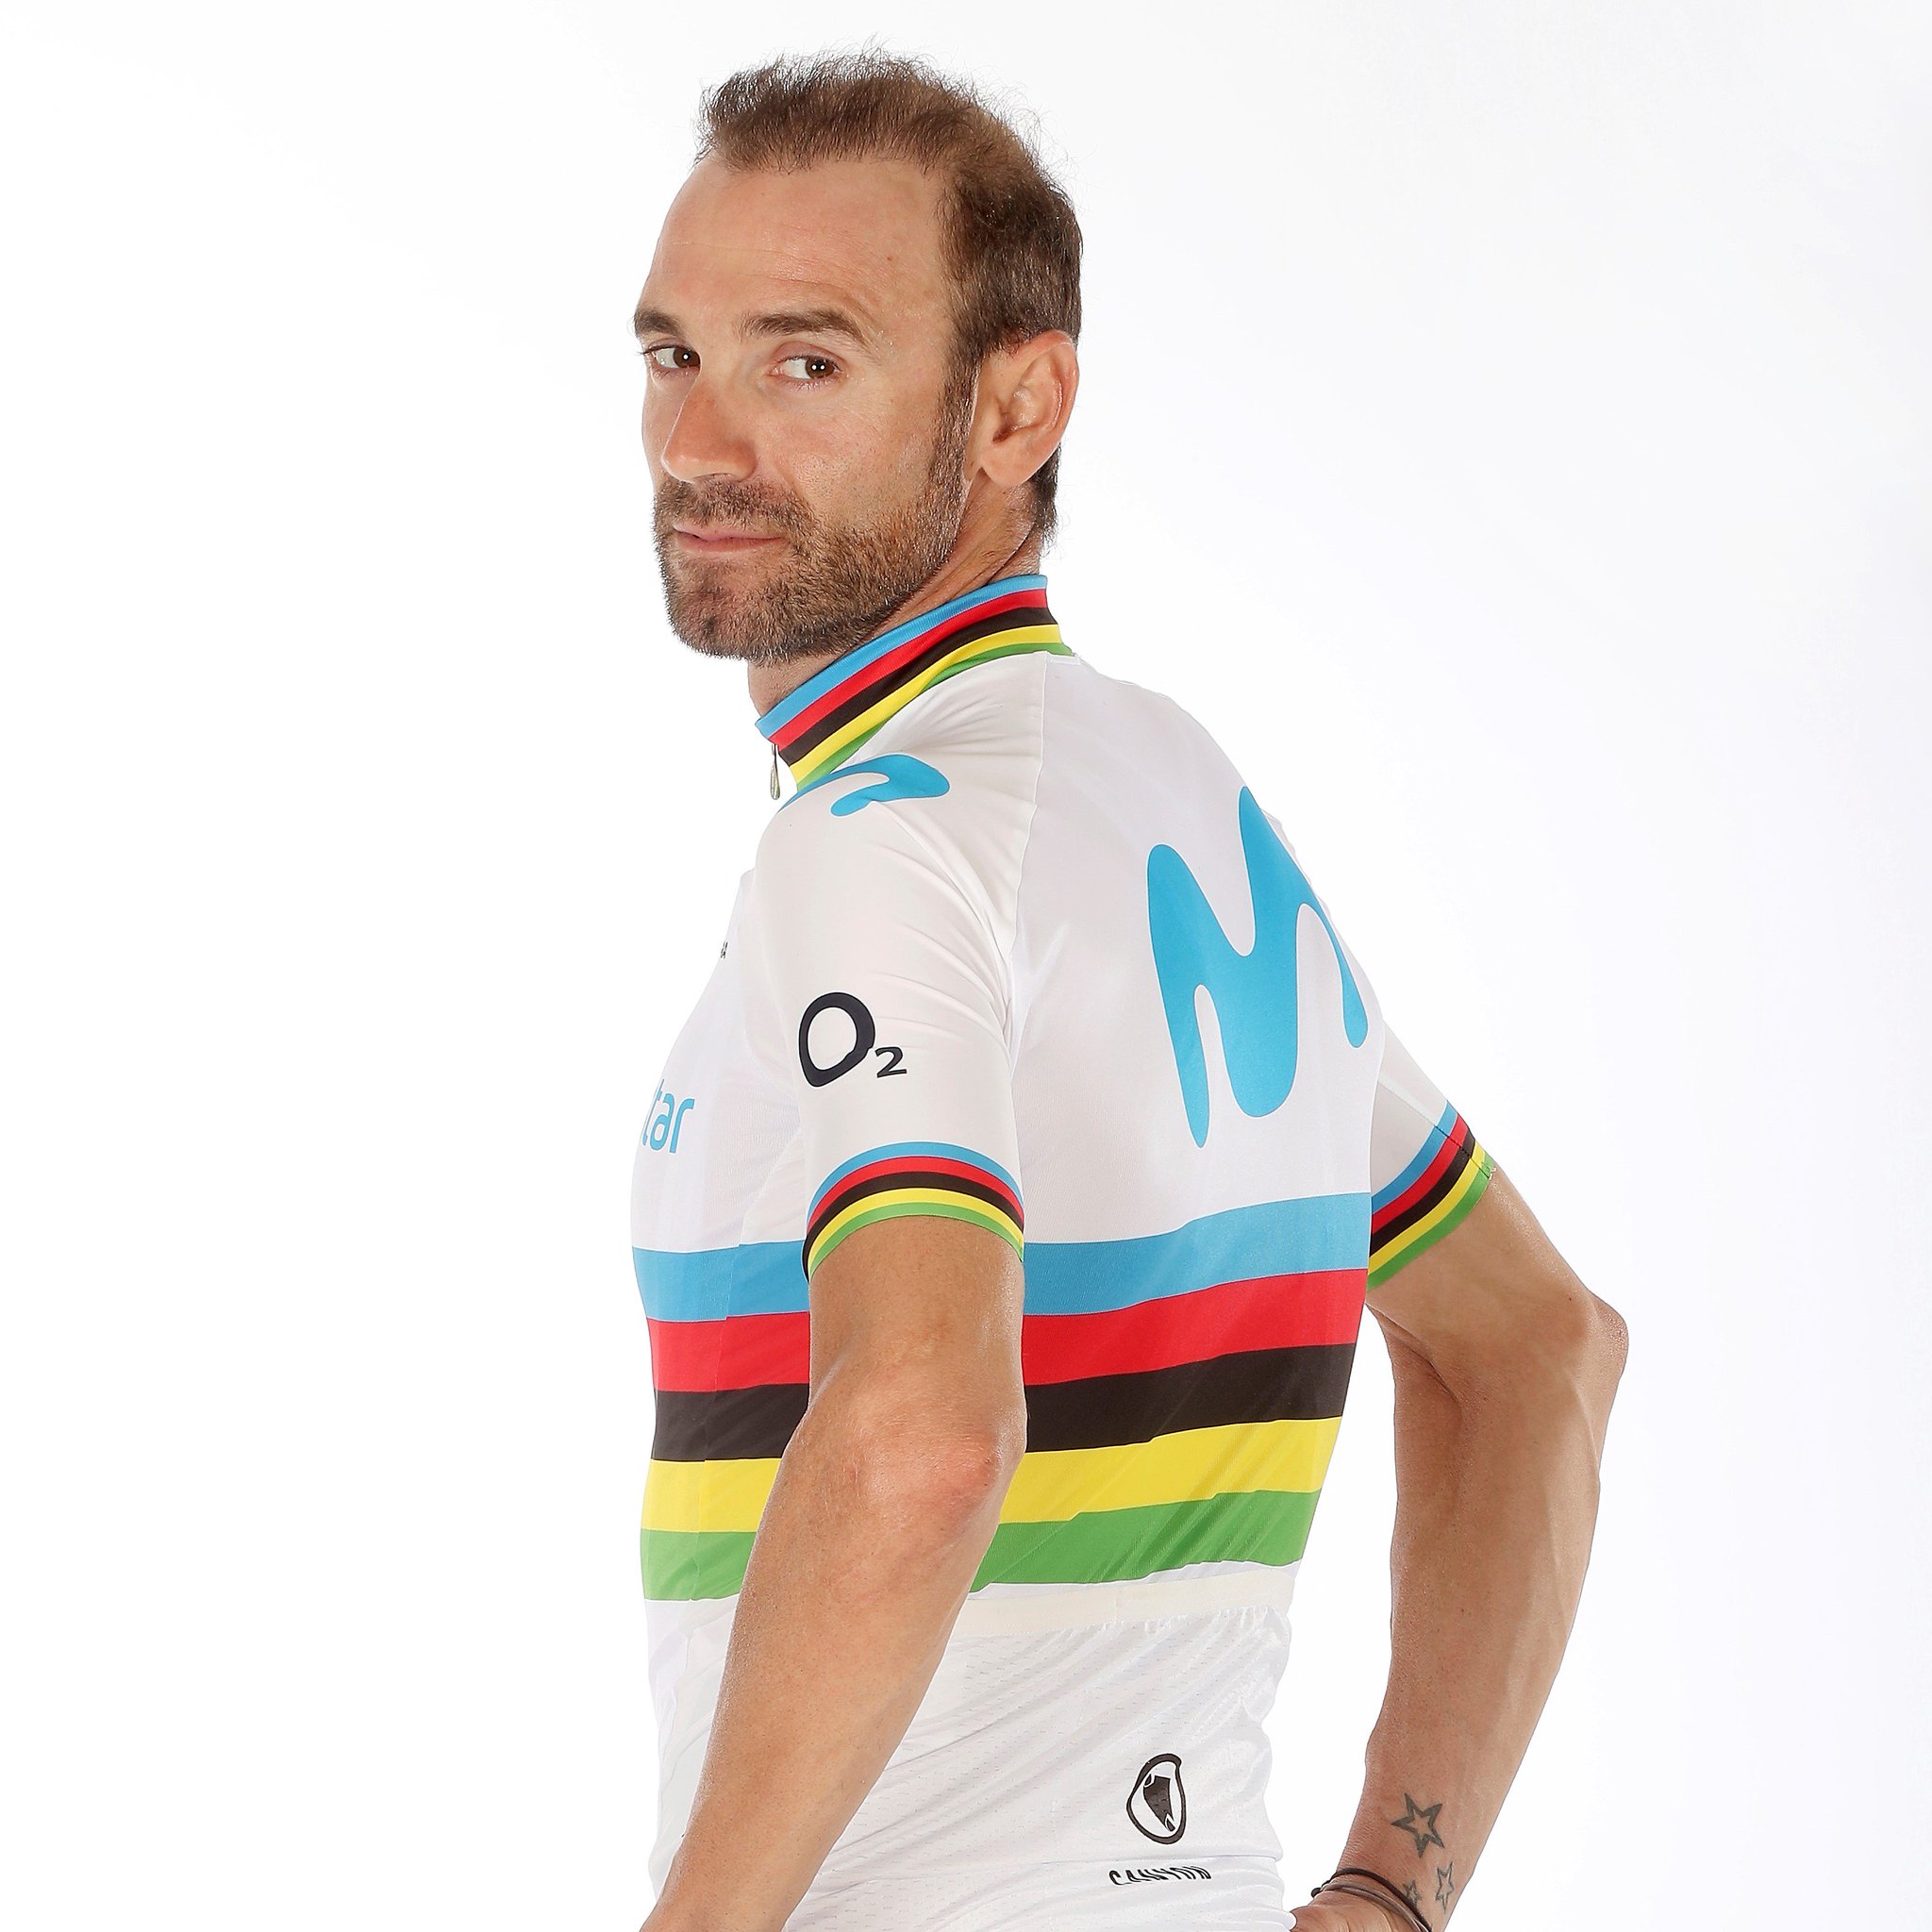 Movistar Team on Twitter: "🌈👕 ¡SORTEO! @movistarlikes regala 5 maillots @ endura Campeón del Mundo, y con uno de ellos, un par de bidones @Elite_cycling 'edición especial'. Participa hasta el lunes